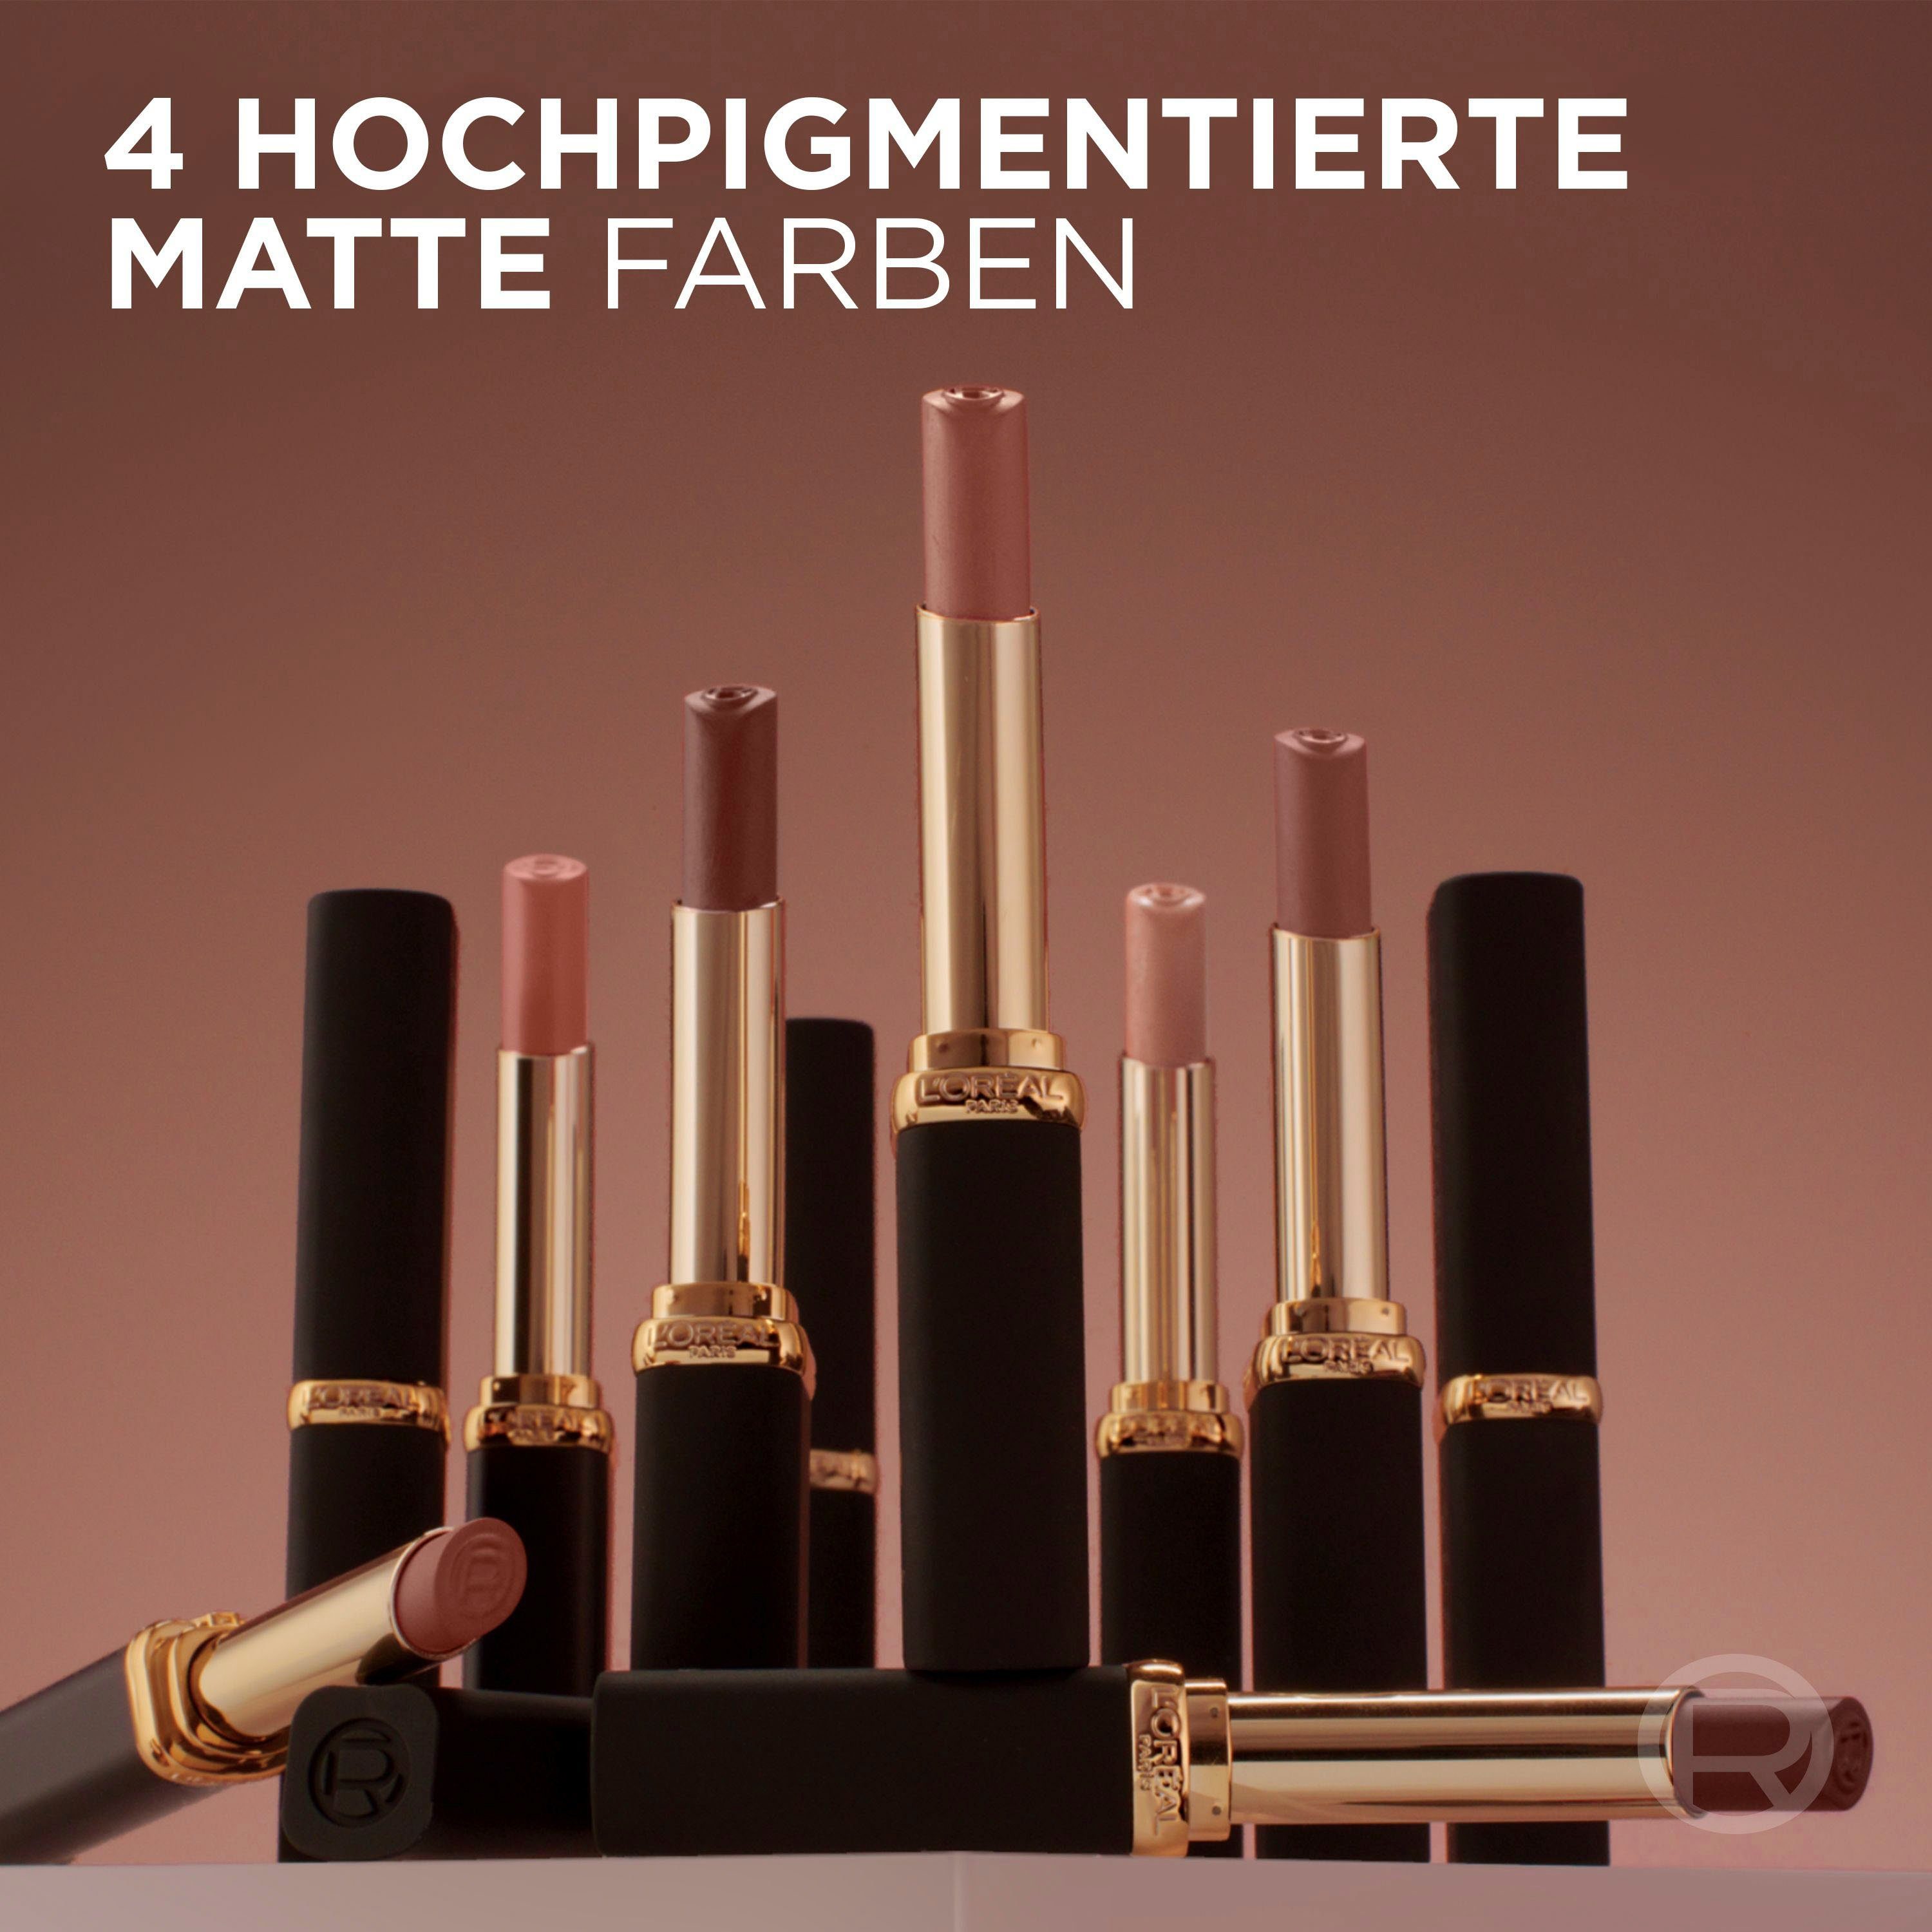 Matte, Color Volume Intense Lippenstift mit L'ORÉAL Riche Hyaluron PARIS